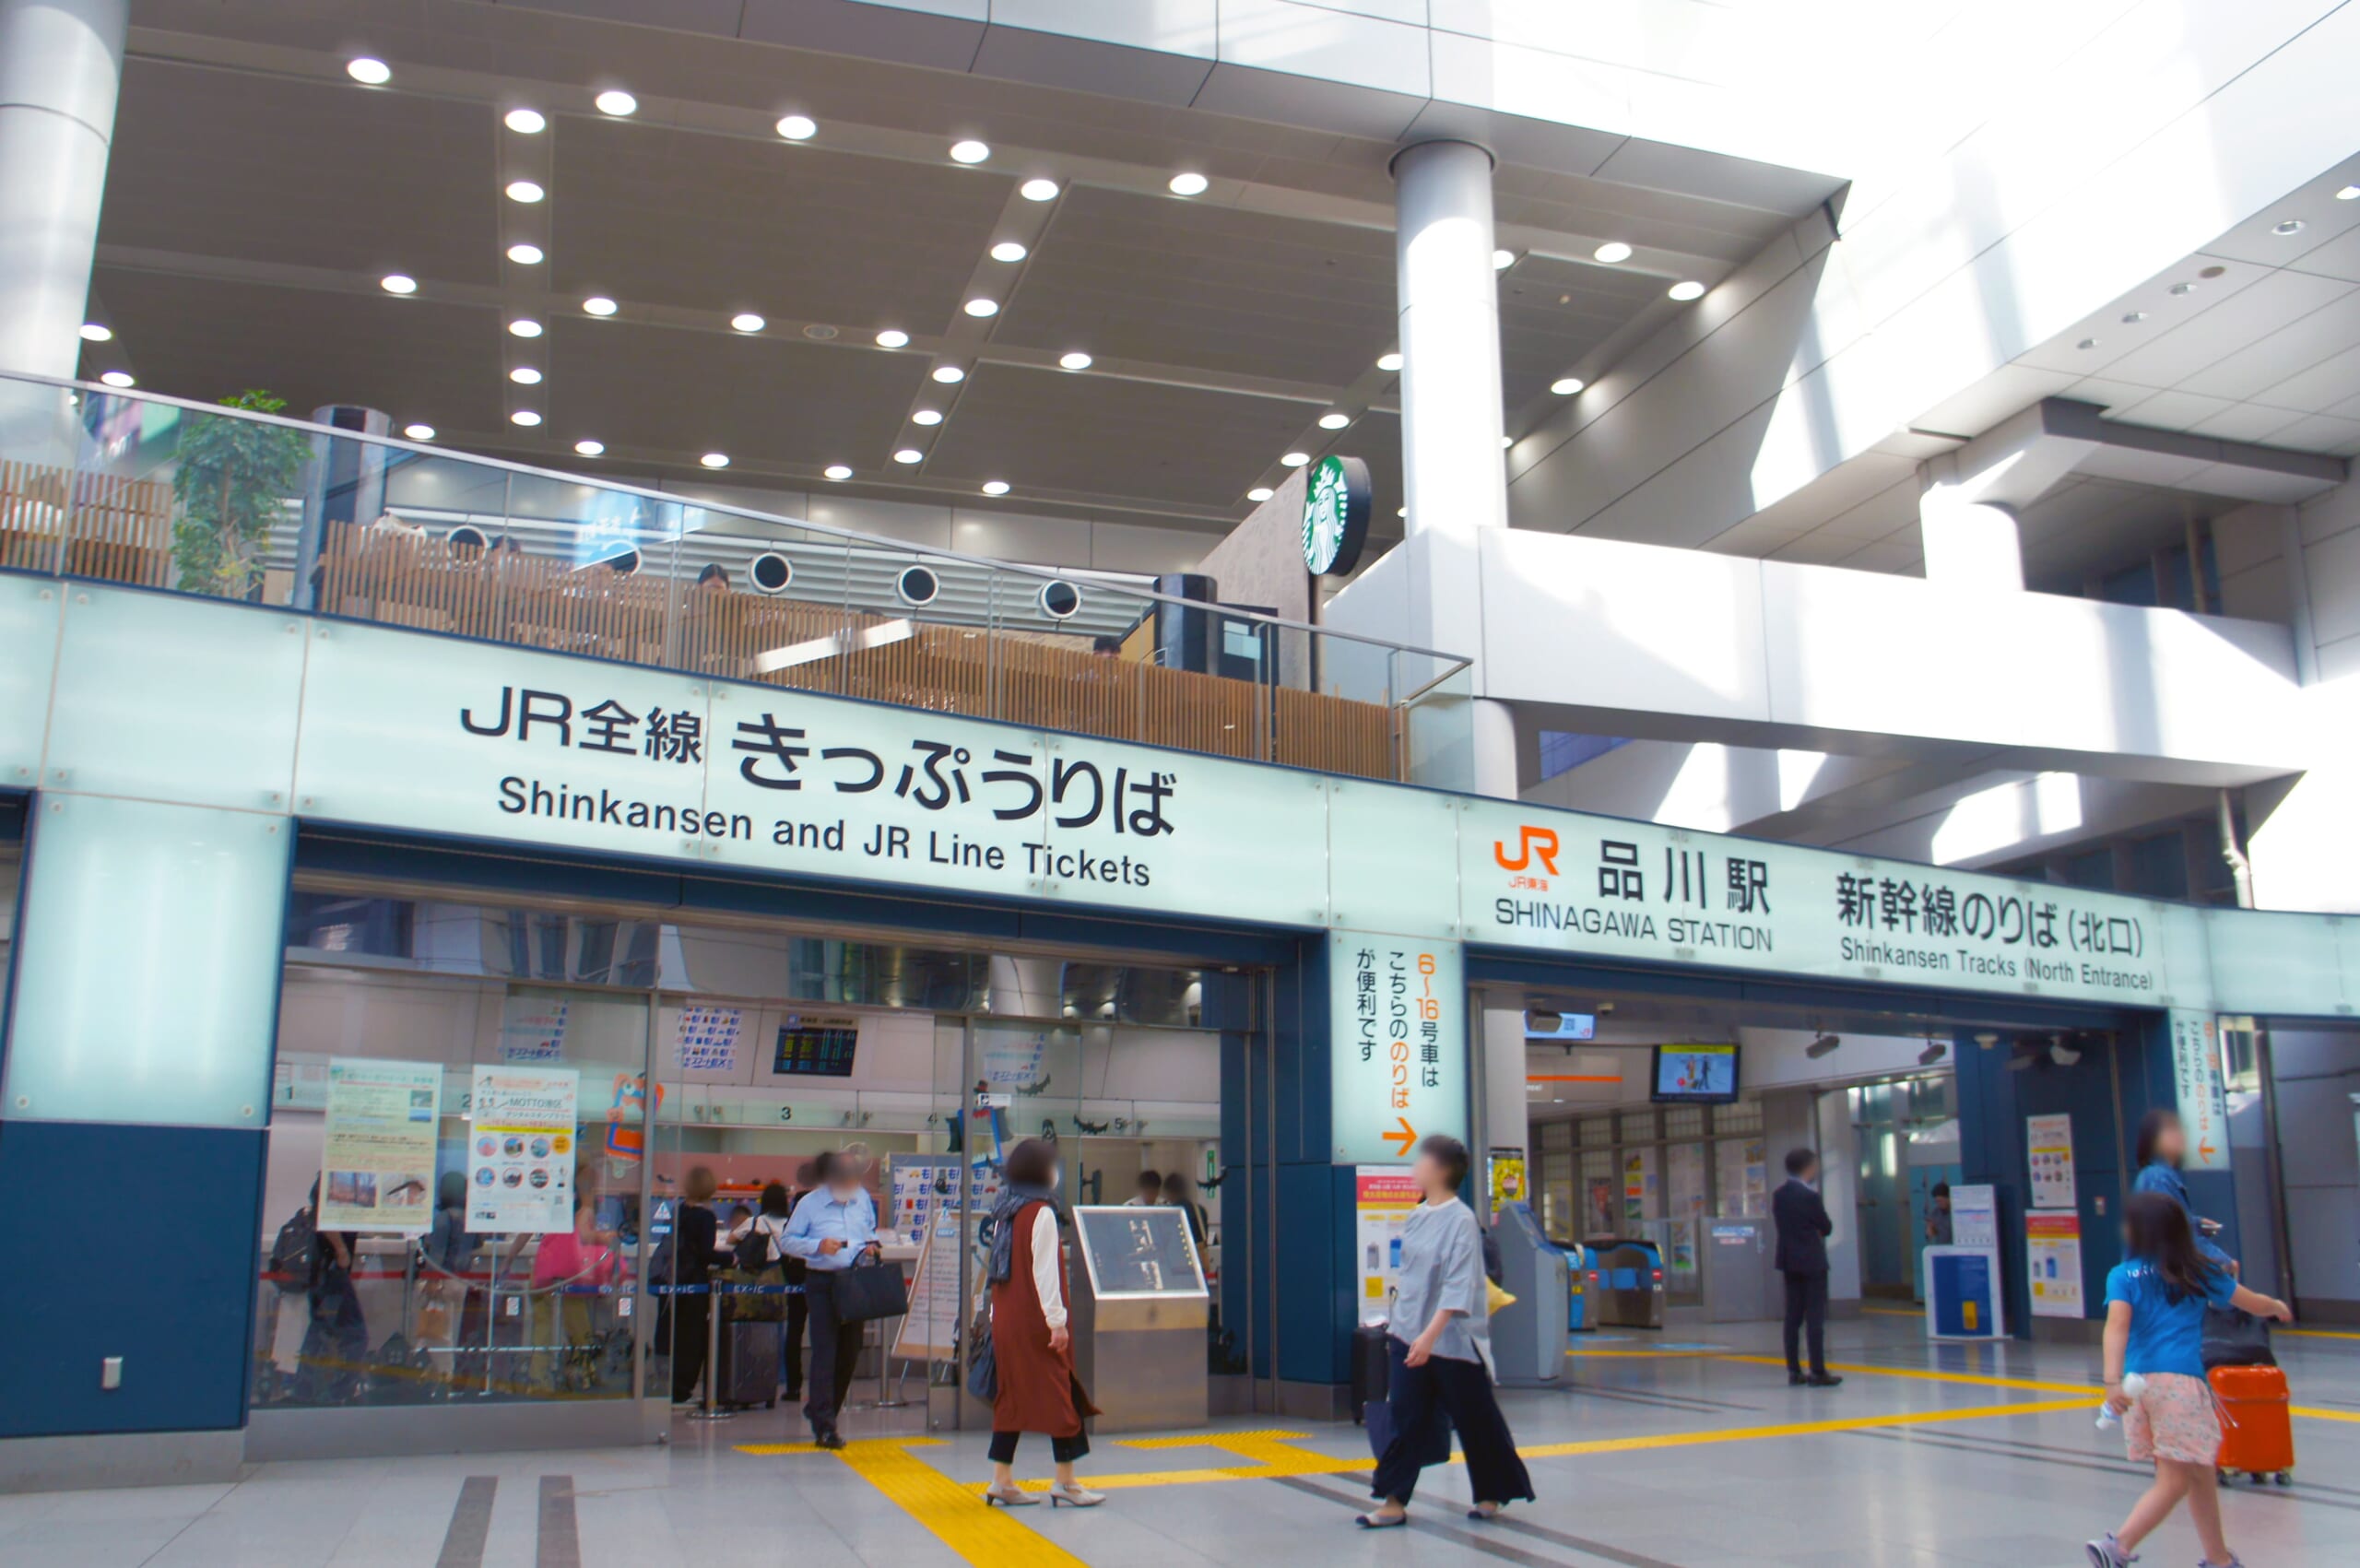 How to Refund a Shinkansen Ticket